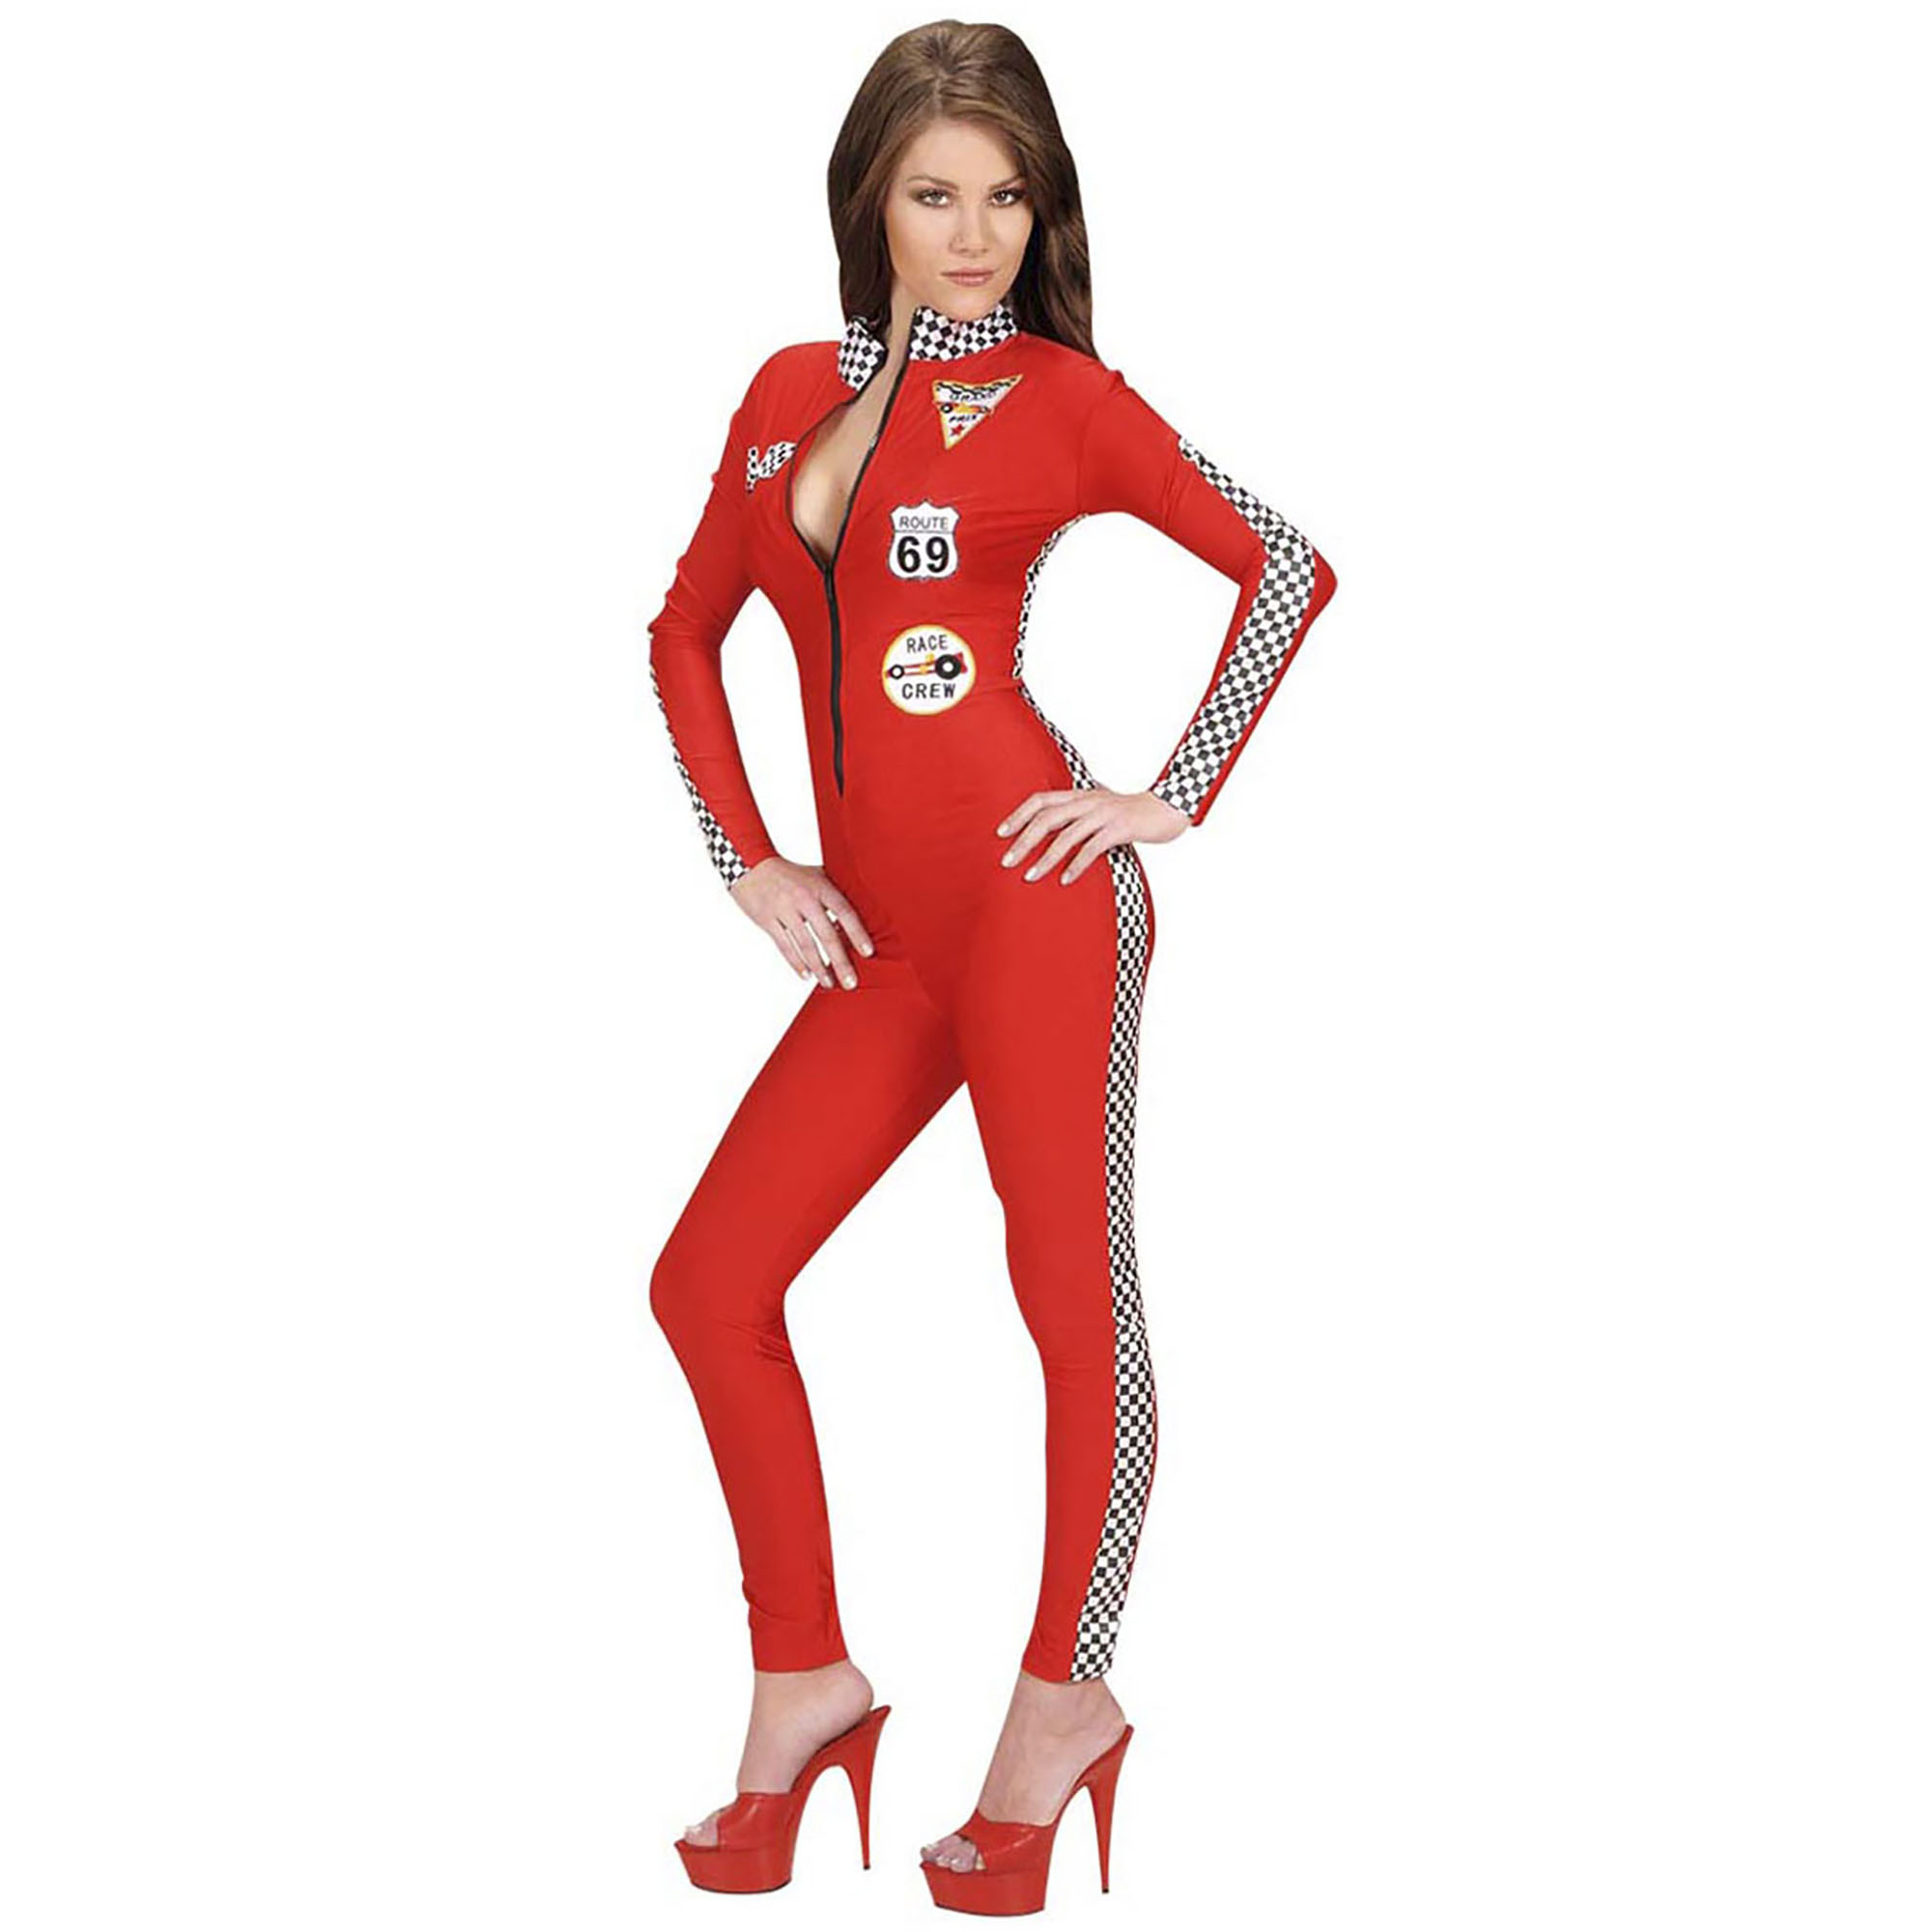 Racing catsuit race dame verkleedkostuum voor dames klaar om te versnellen